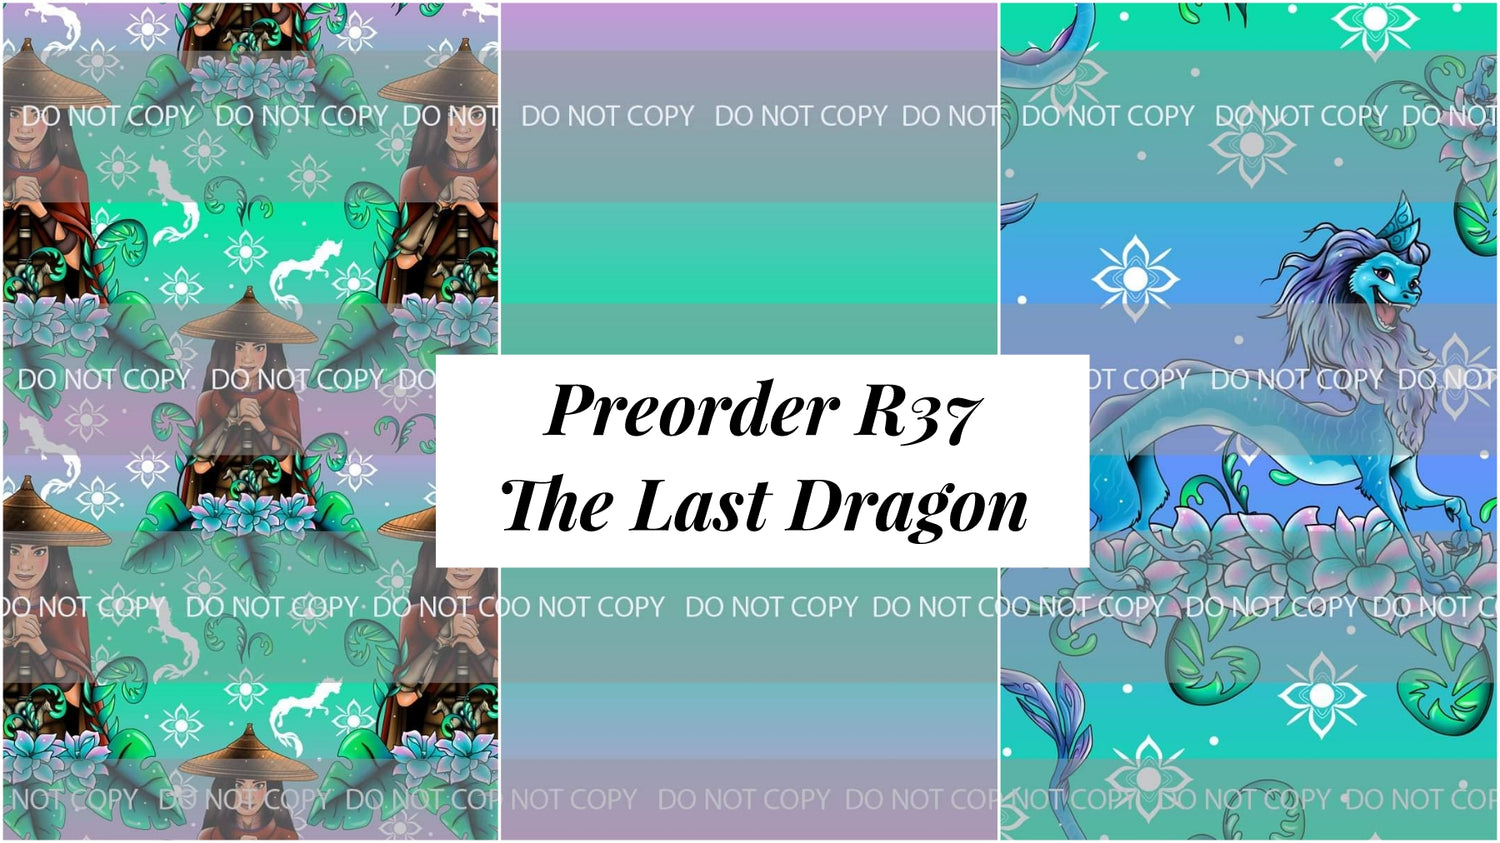 Preorder R37 The Last Dragon